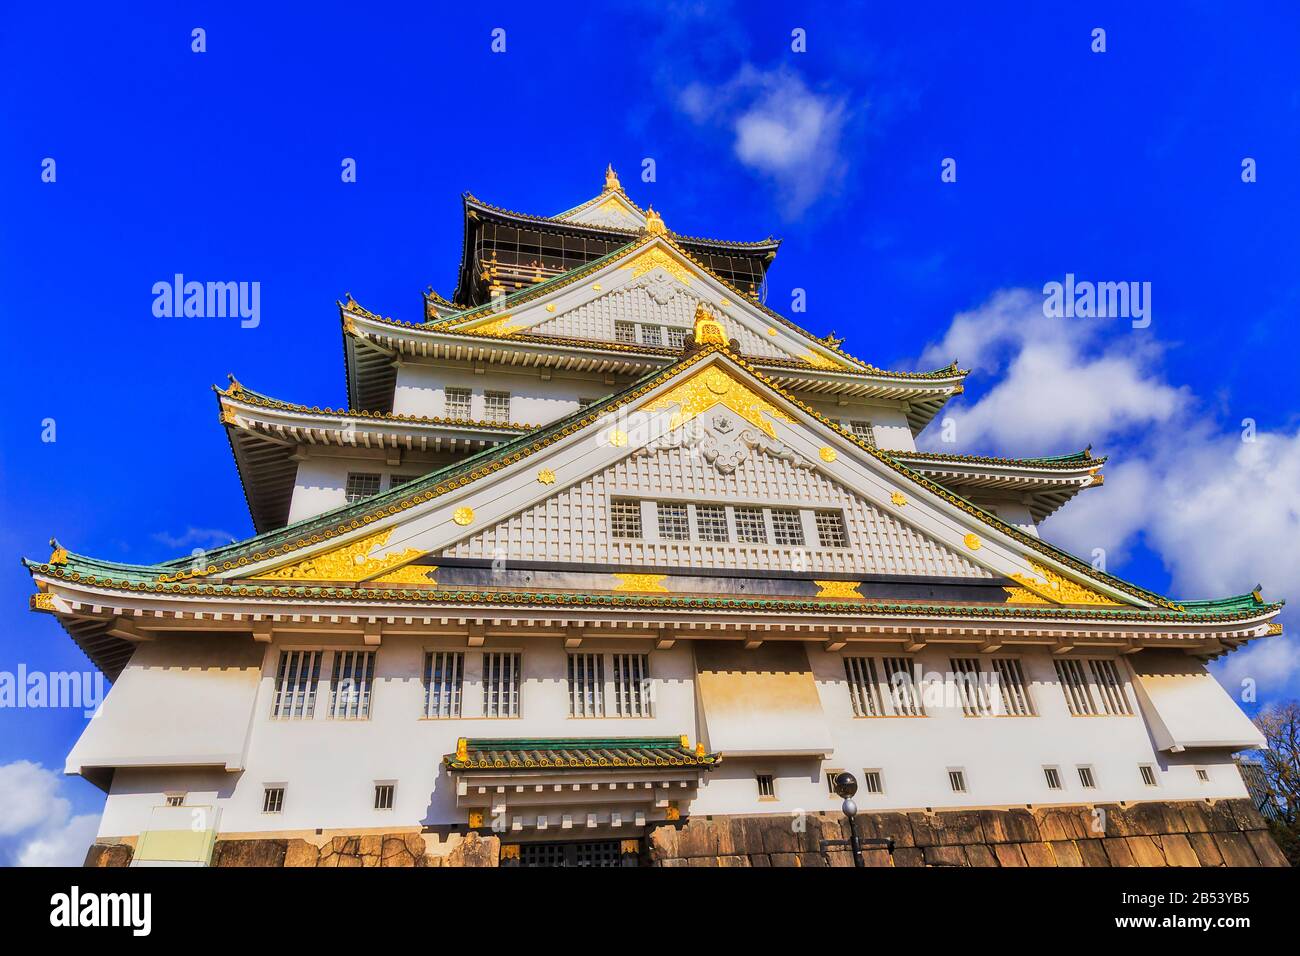 Façade lumineuse de la spectaculaire tour du château historique dans la ville d'Osaka au Japon contre le ciel bleu. Banque D'Images